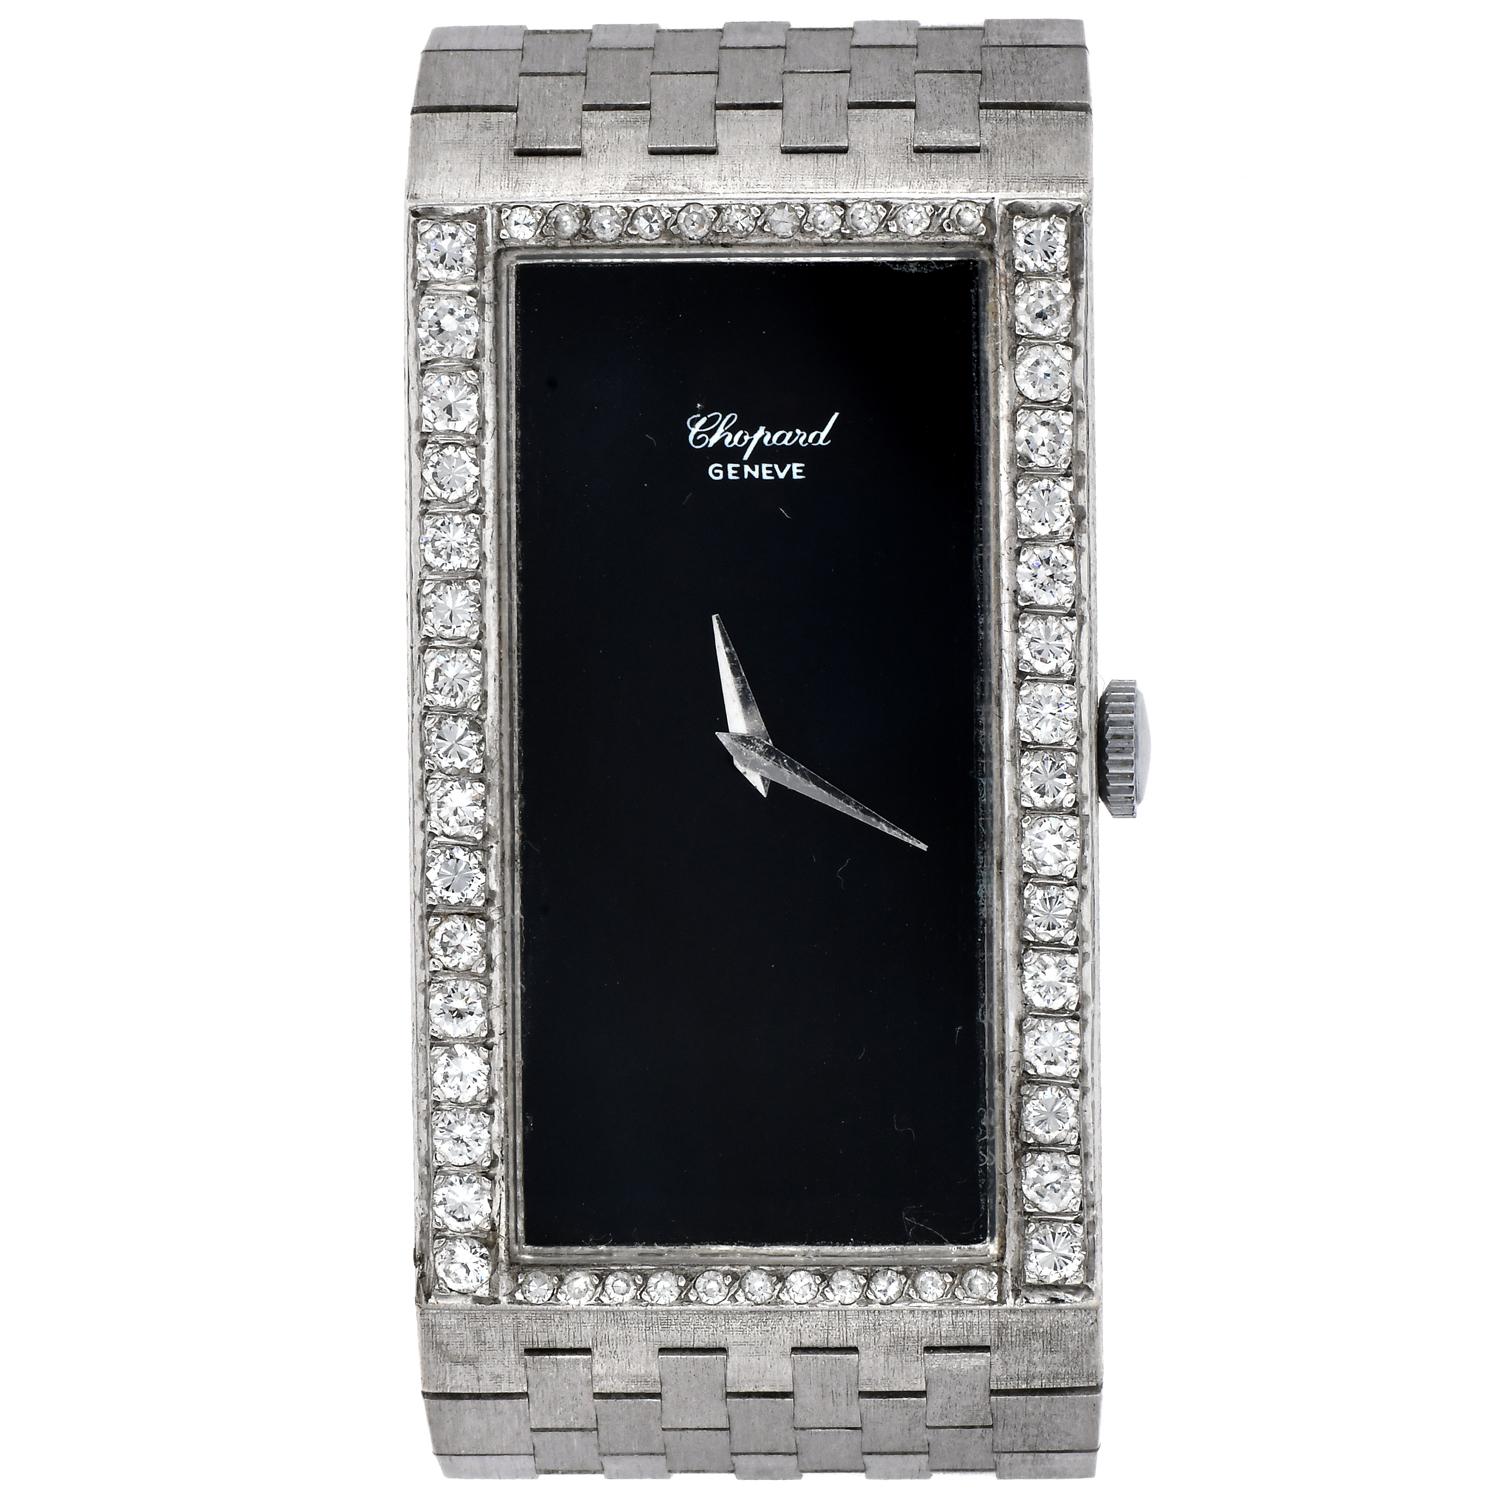 Un exquis Vintage grand Chopard Diamant et onyx or blanc 18K Rectangulaire  Montre pour dames à remontoir.

Entièrement réalisée en or blanc 18 carats, elle pèse environ 66,3 grammes.

Elle est ornée d'un halo de diamants ronds authentiques, 54 au